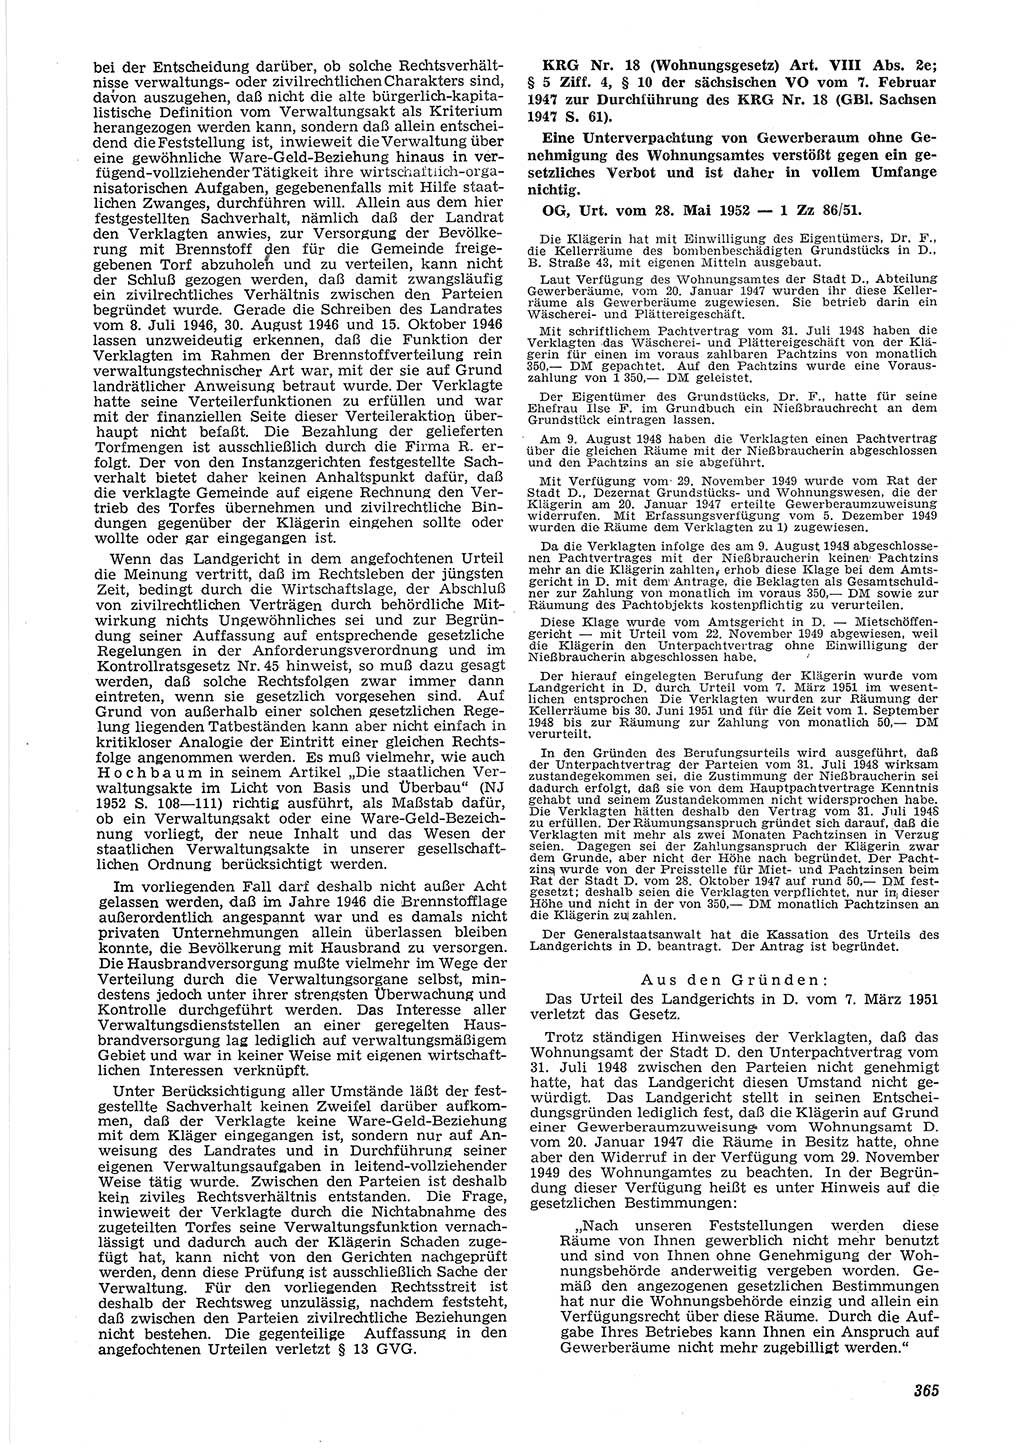 Neue Justiz (NJ), Zeitschrift für Recht und Rechtswissenschaft [Deutsche Demokratische Republik (DDR)], 6. Jahrgang 1952, Seite 365 (NJ DDR 1952, S. 365)